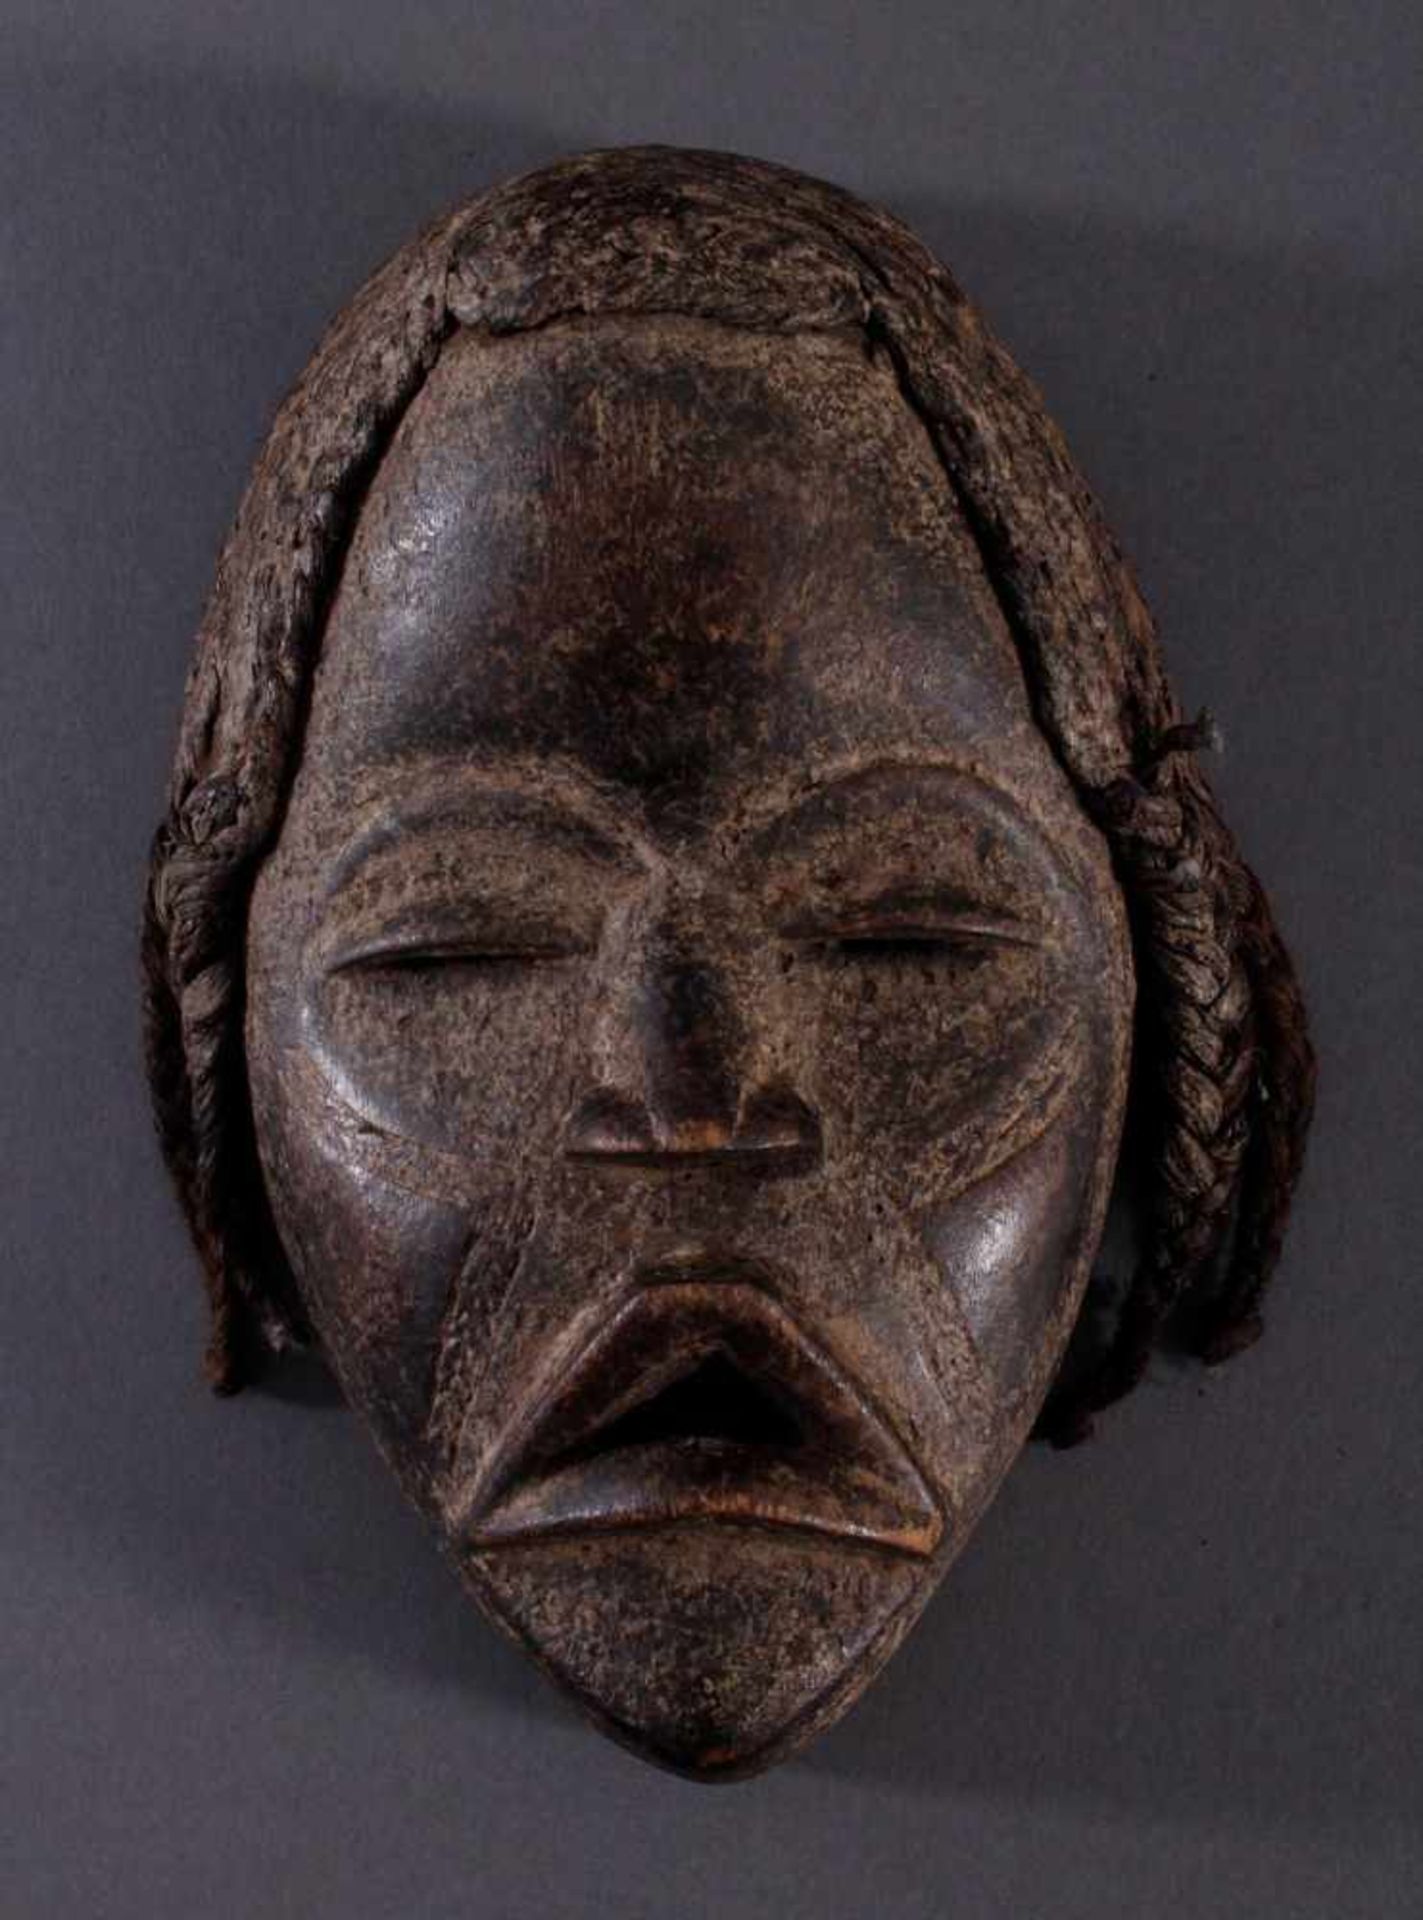 Antike Maske der Dan, LiberiaHolz, geschnitzt, dunkler Patina, Narbenschmuck, Haare aus geflochtenen